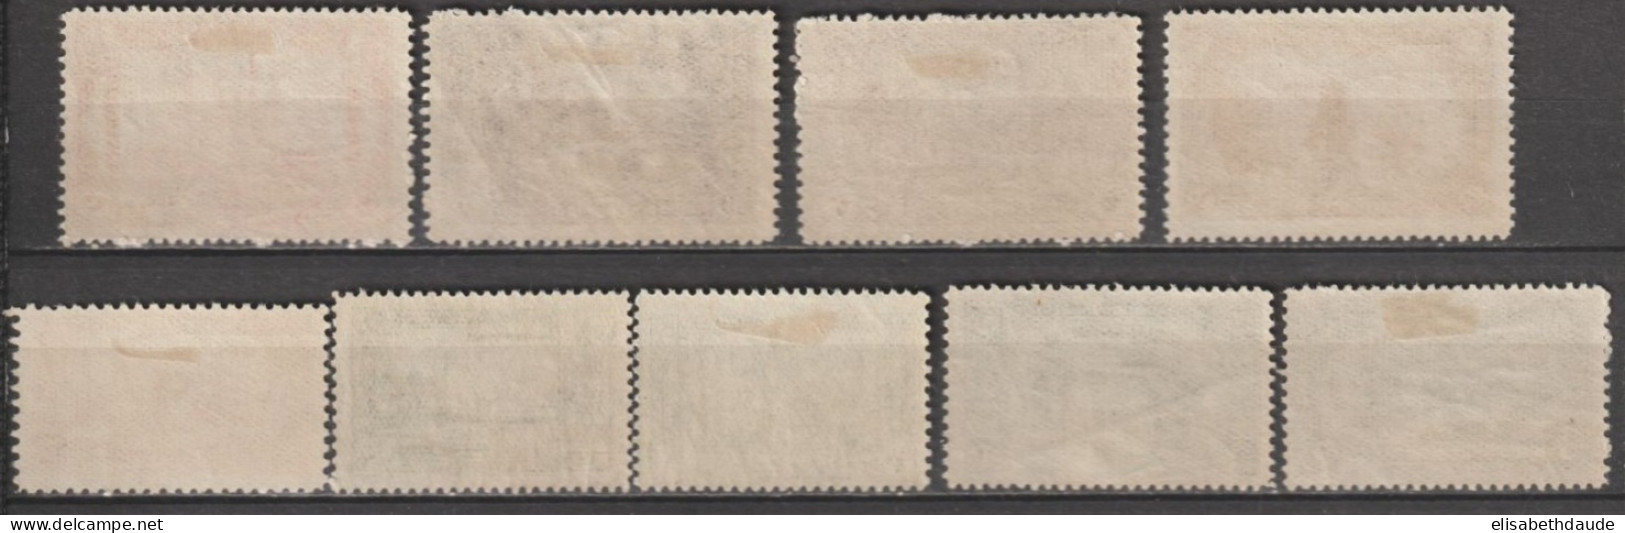 1920 - TURQUIE - SERIE COMPLETE YVERT N°617/625 * MH - COTE = 60 EUR - Unused Stamps